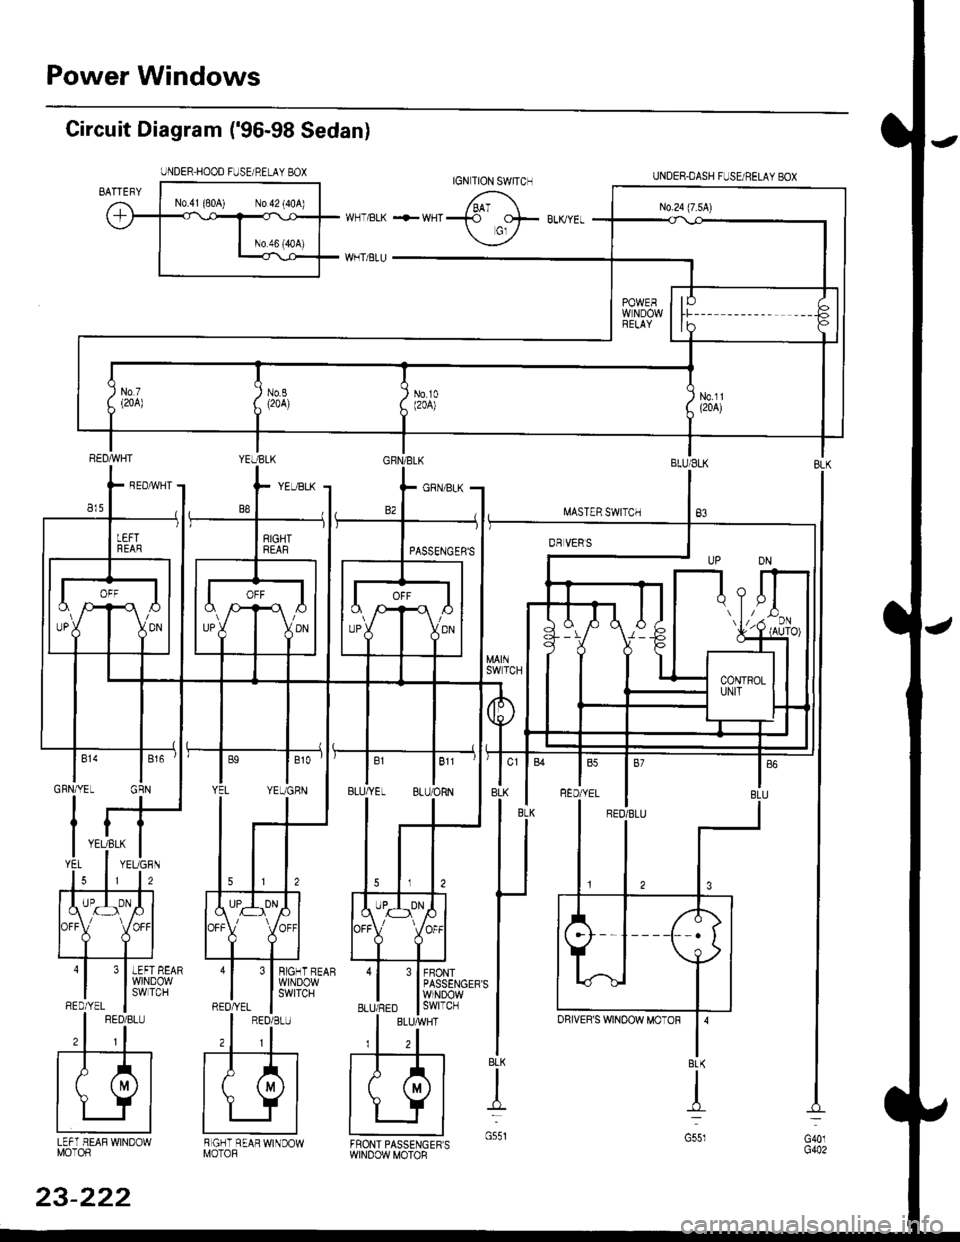 HONDA CIVIC 1998 6.G Workshop Manual Power Windows
Circuit Diagram (96-98 Sedan)
UNDER HOOD FUSE/RELAY BOX
I.iASTER SWITCH
UNDER.DASH FUSUBELAYEOX
BLU/ELK
B3
3 I BIGHT BEAR
l$,]ilP3,y
FBONTPASSENGERSWINDOWswtTcH
BLK
t
G551LEFT HEAF WI